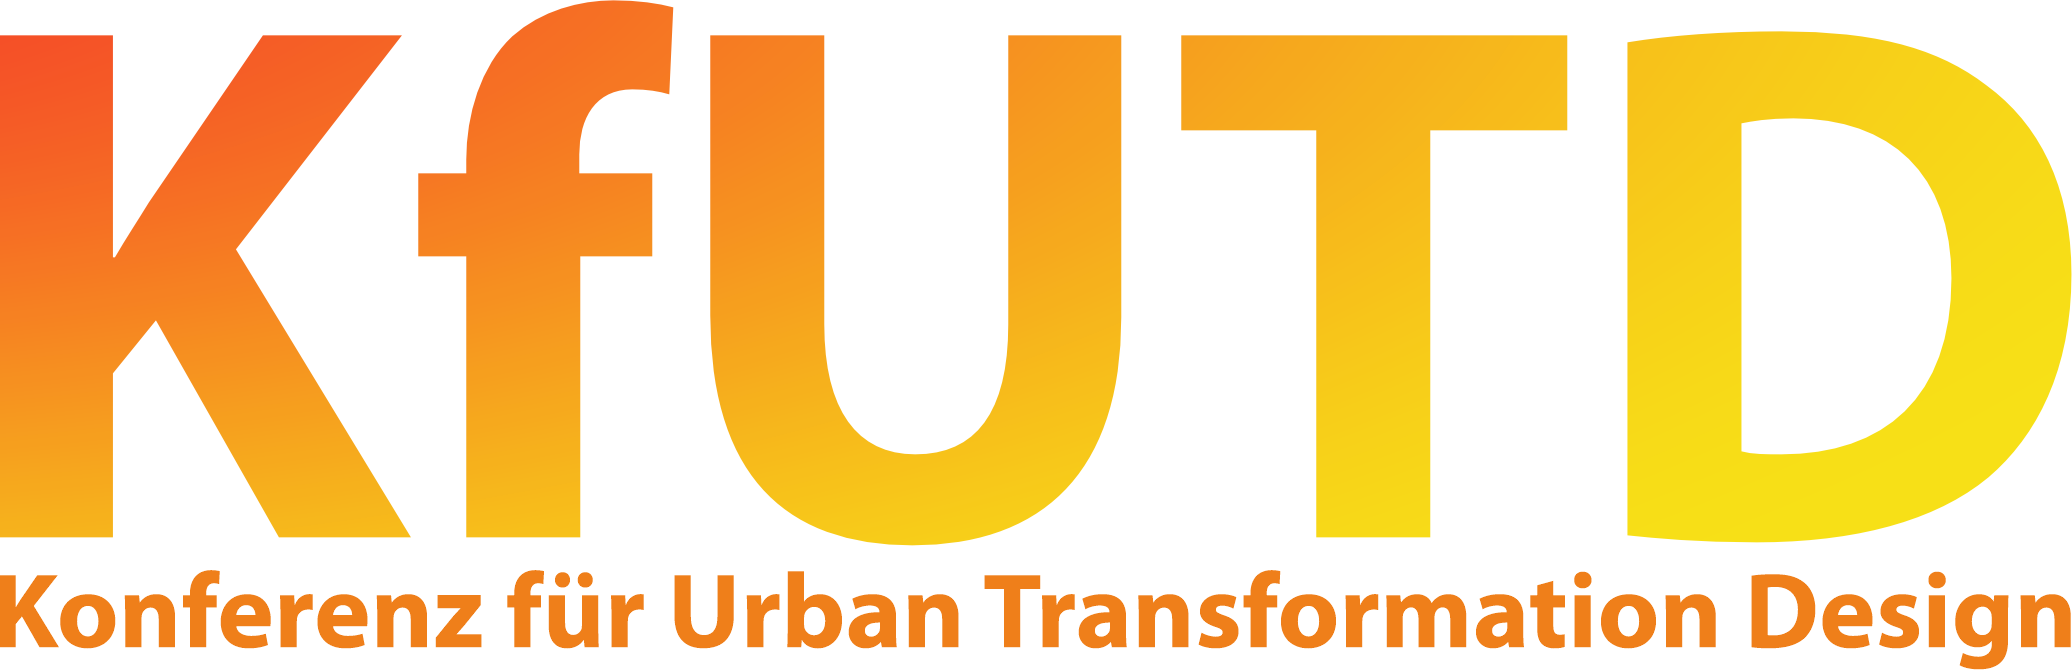 Konferenz für Urban Transformation Design